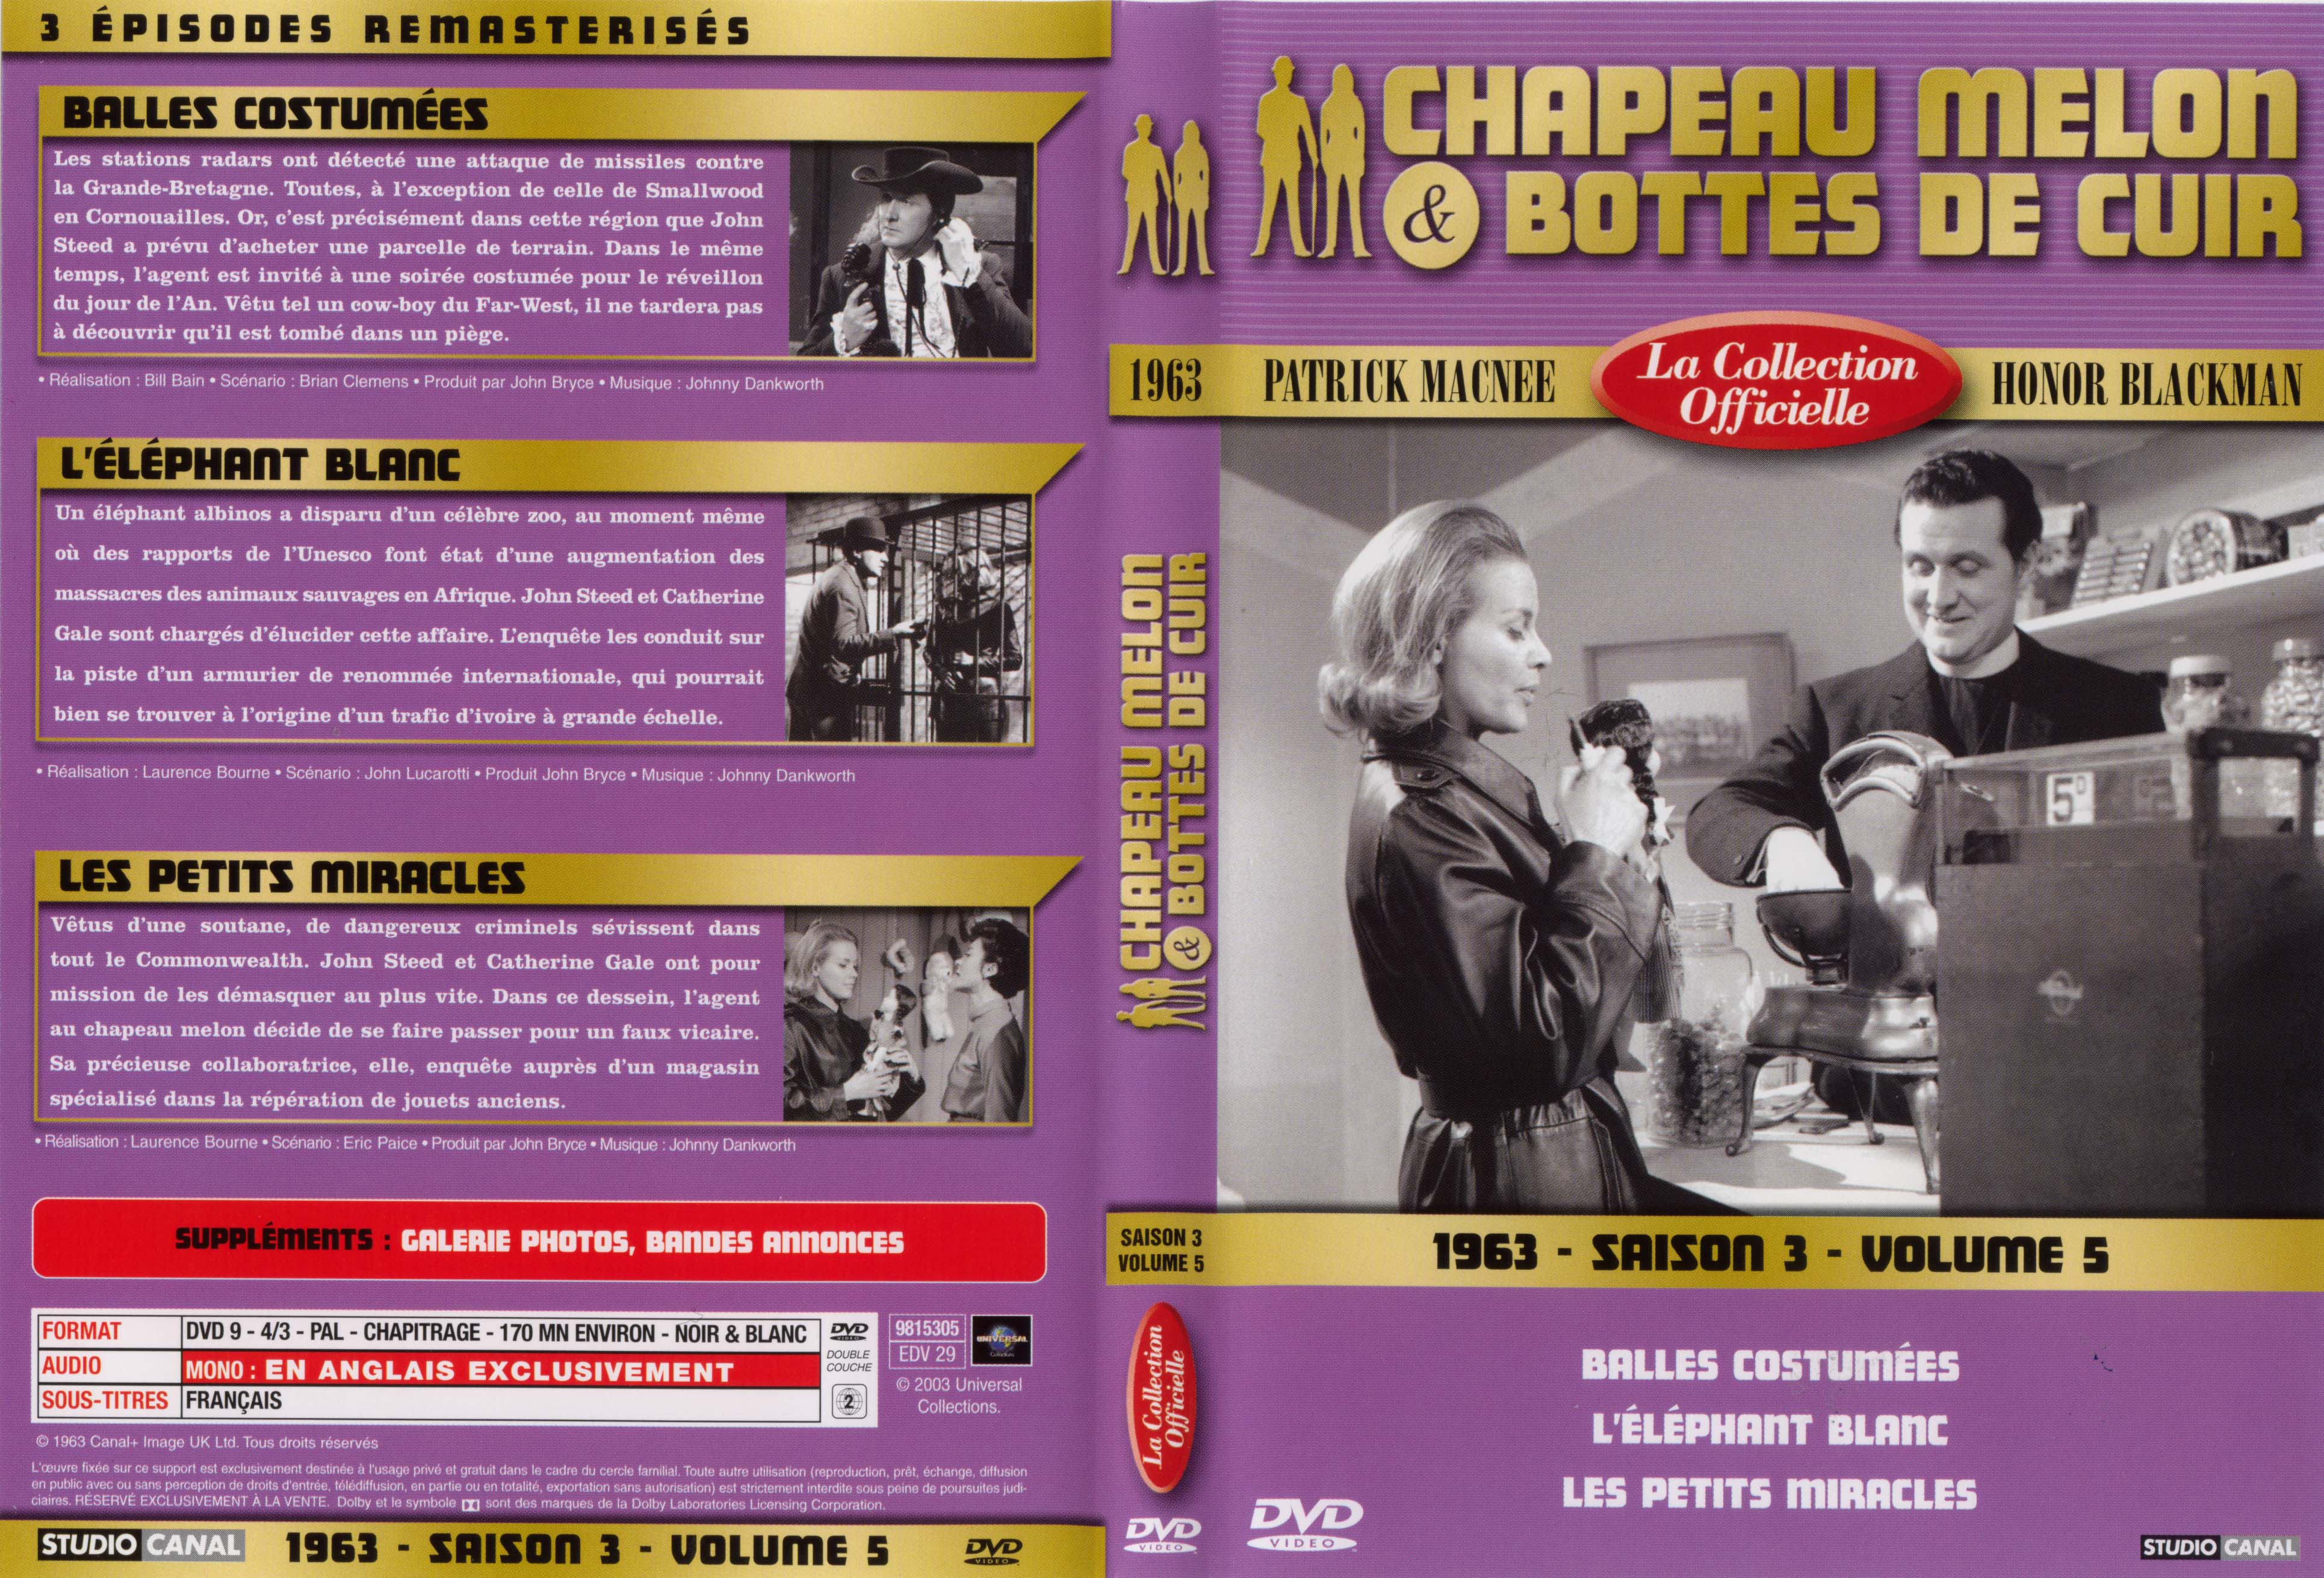 Jaquette DVD Chapeau melon et bottes de cuir 1963 saison 3 vol 5